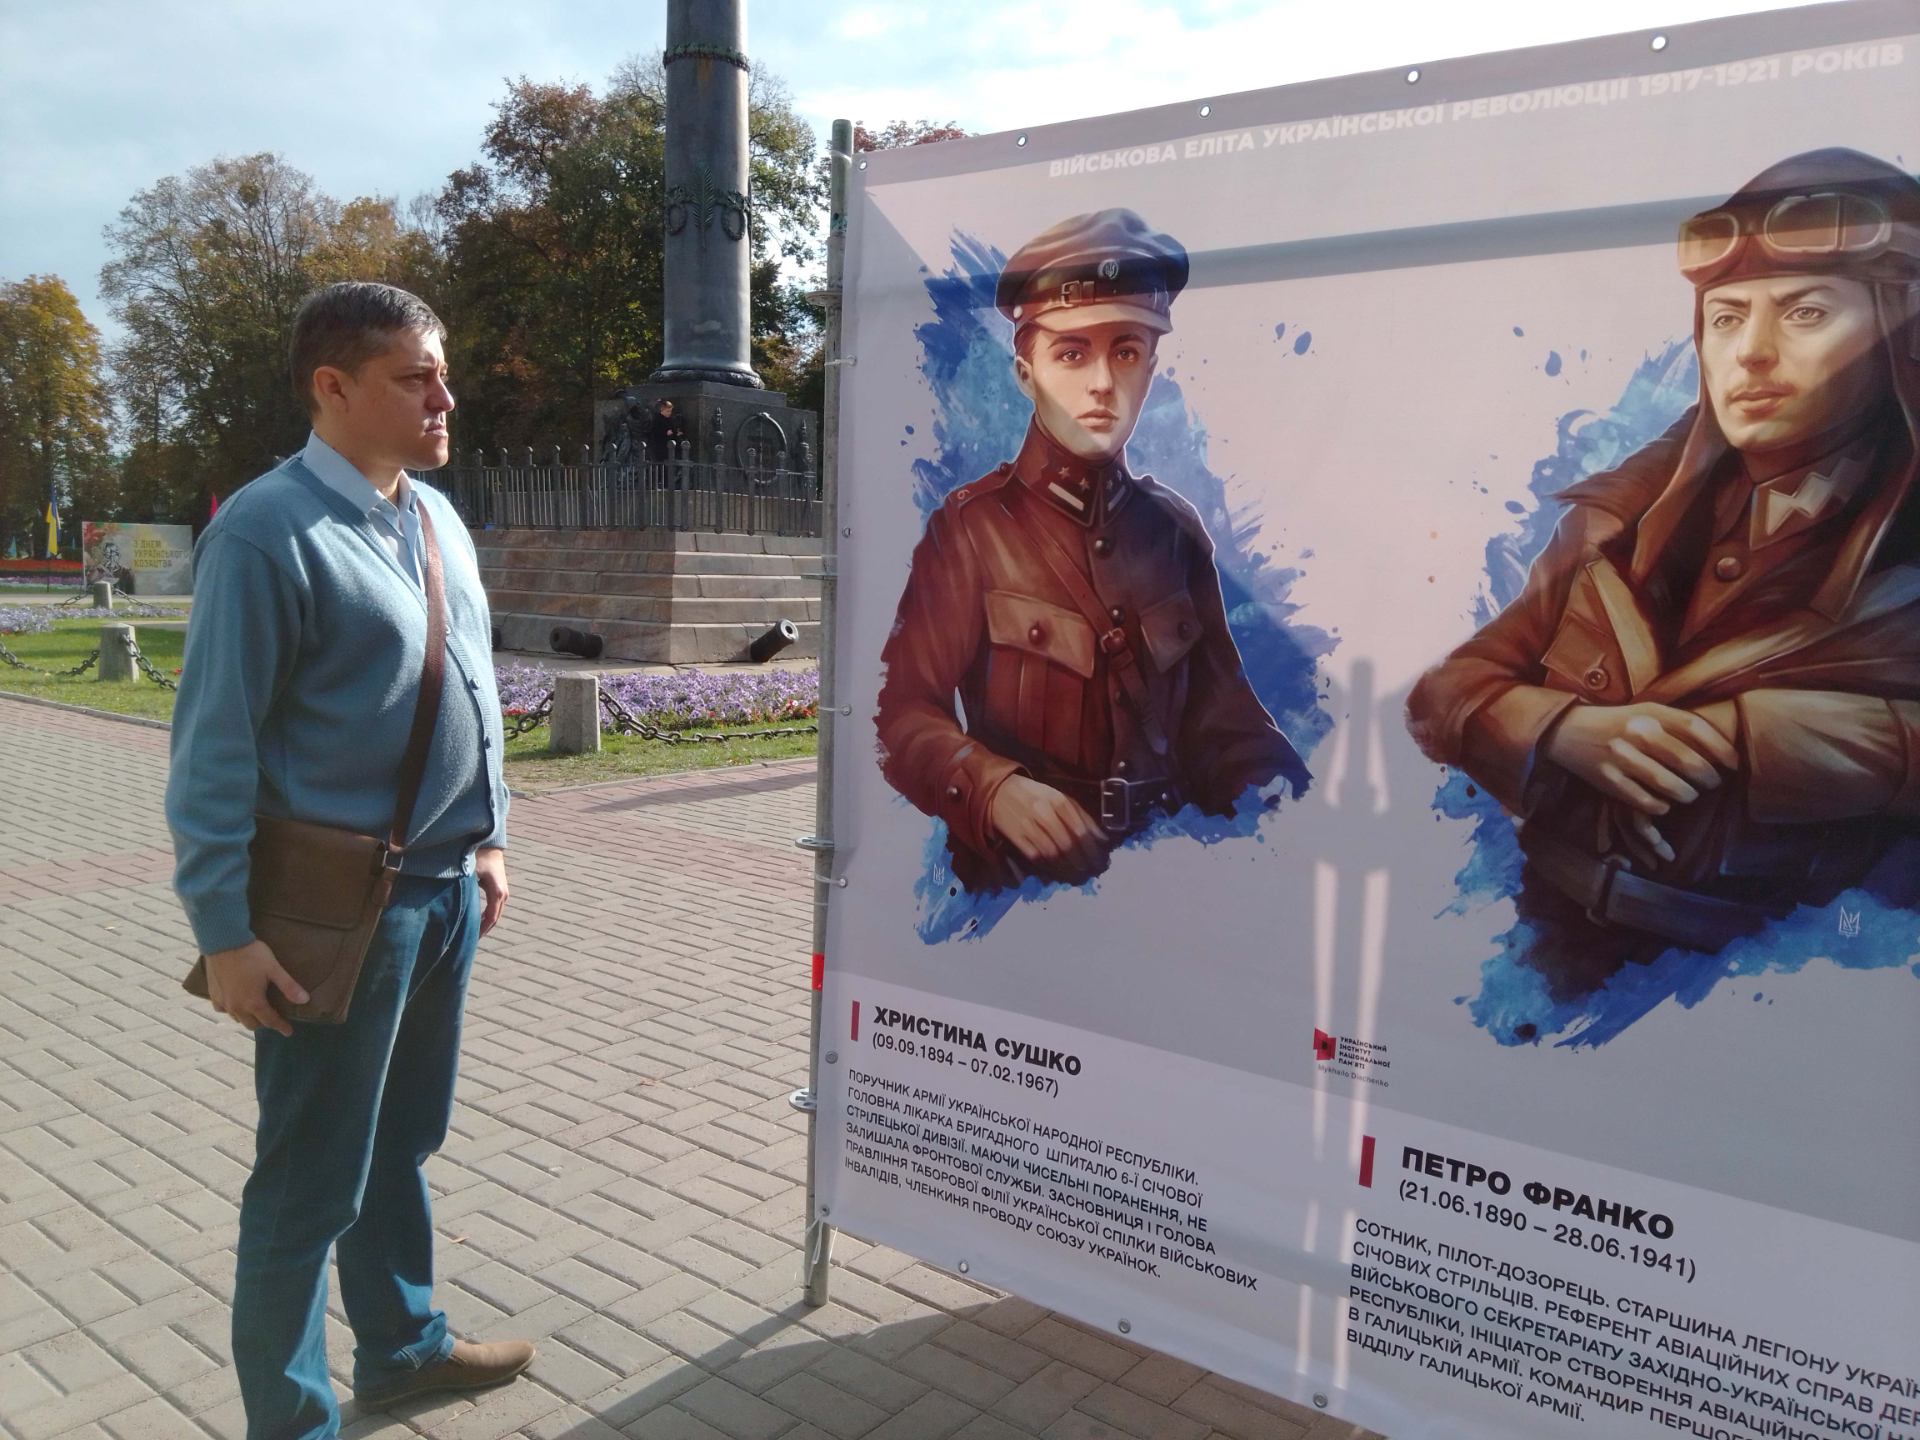 Постер УІНП: Еліта Українського війська 1917-21 років у Корпусному саду